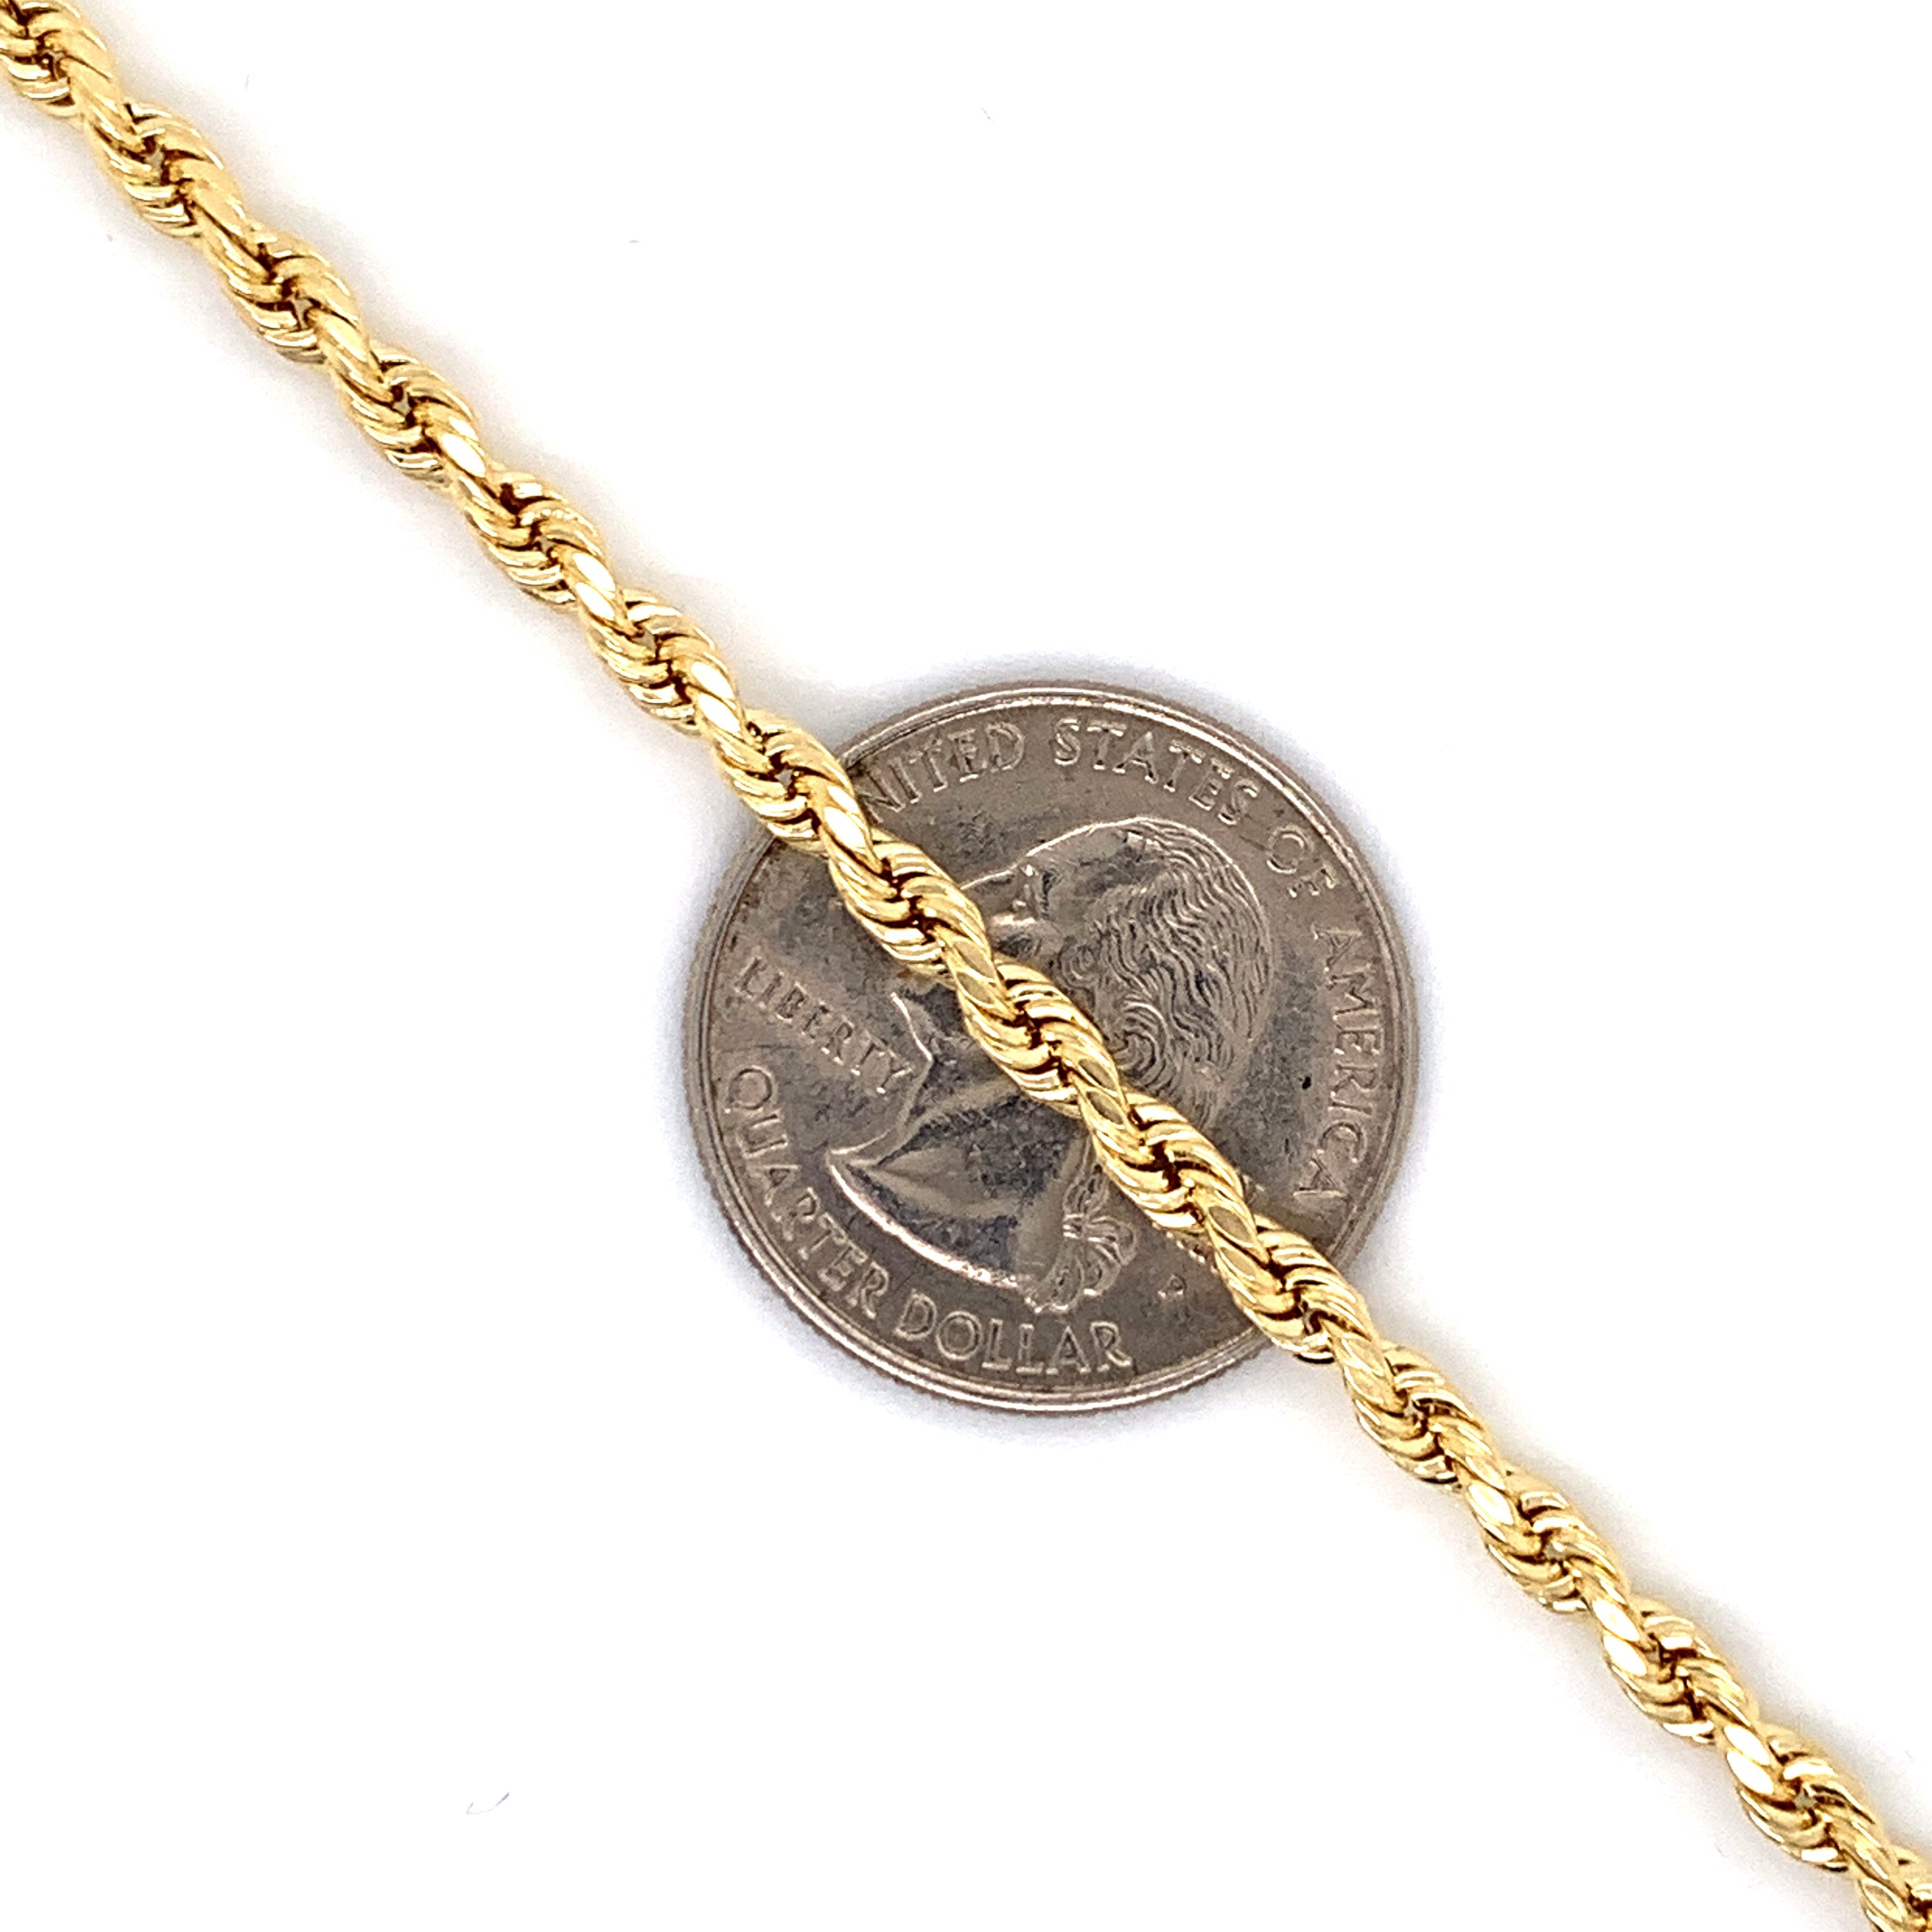 10K Gold Rope Chain (Regular)- 5mm - White Carat Diamonds 